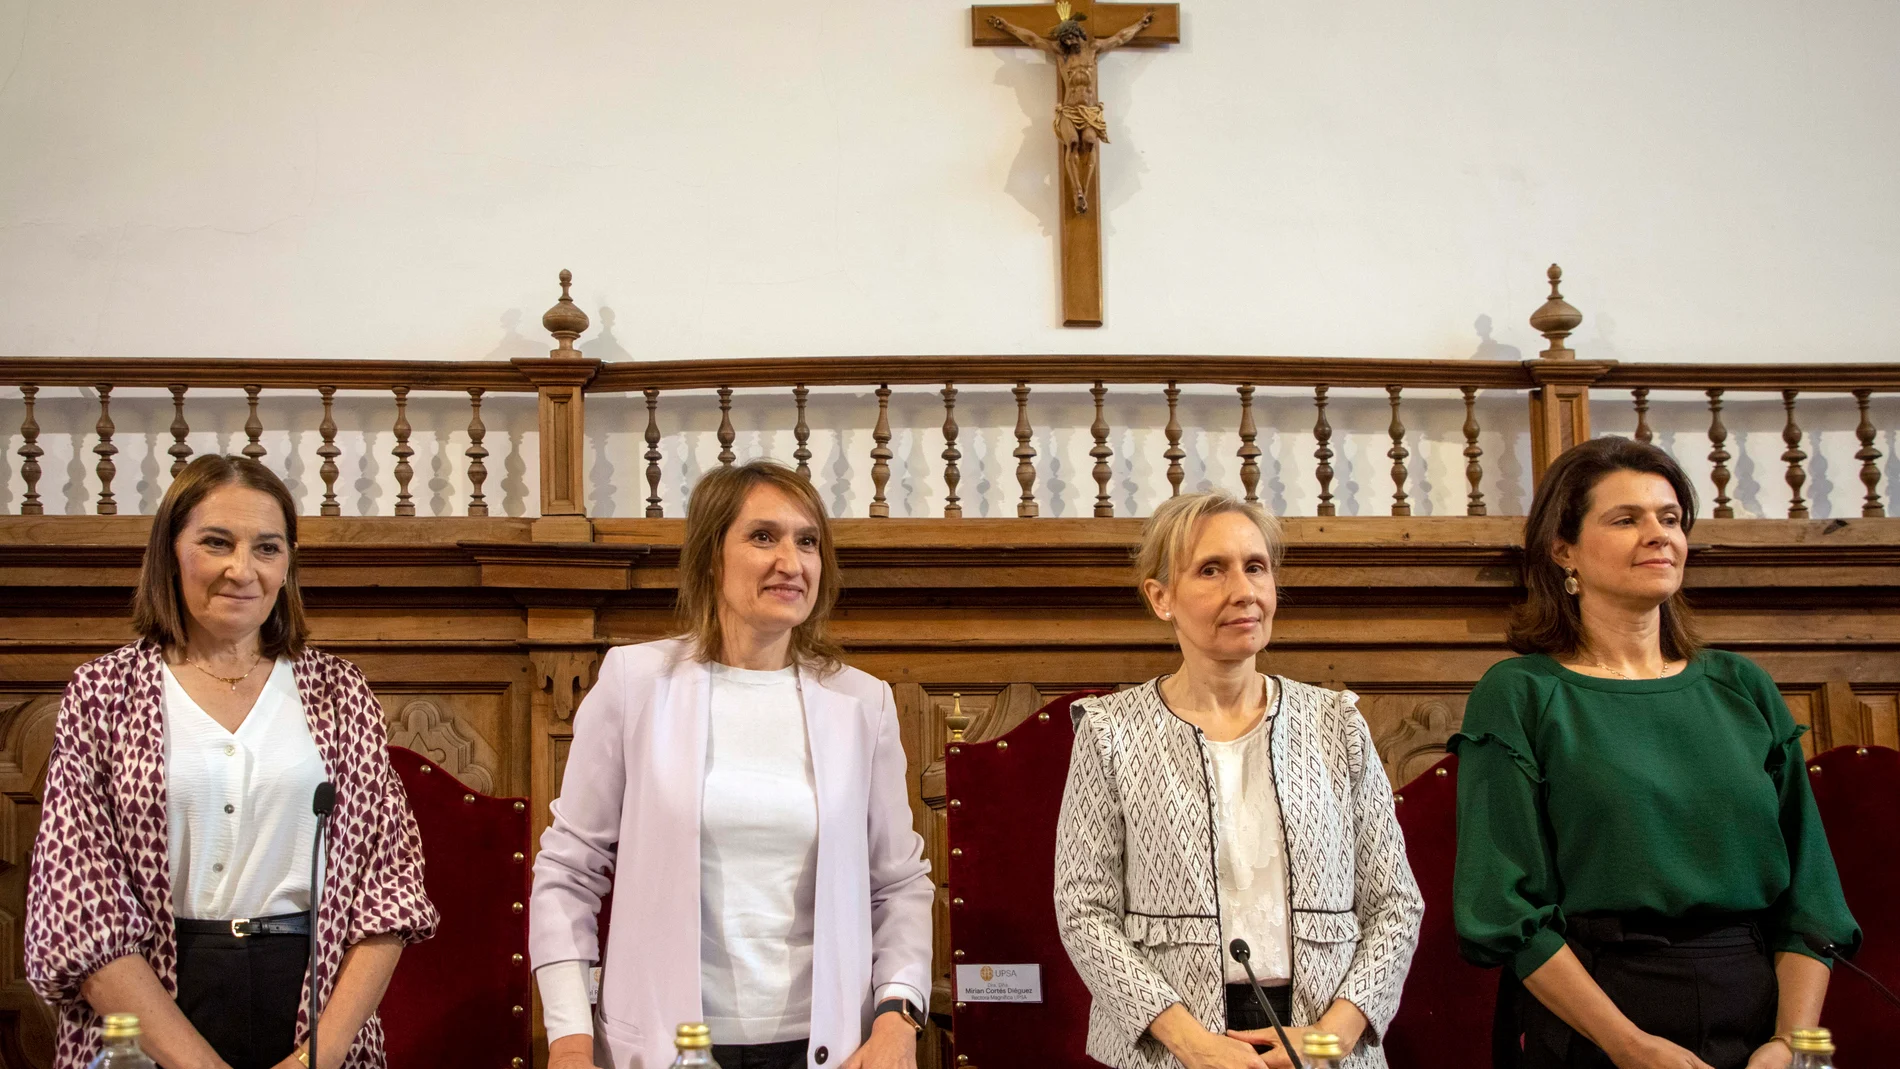 La consejera de Educación, Rocío Lucas, interviene en el acto de inauguración de la "Jornada Ágora" de la Catedra Telefónica ProFuturo-Upsa.